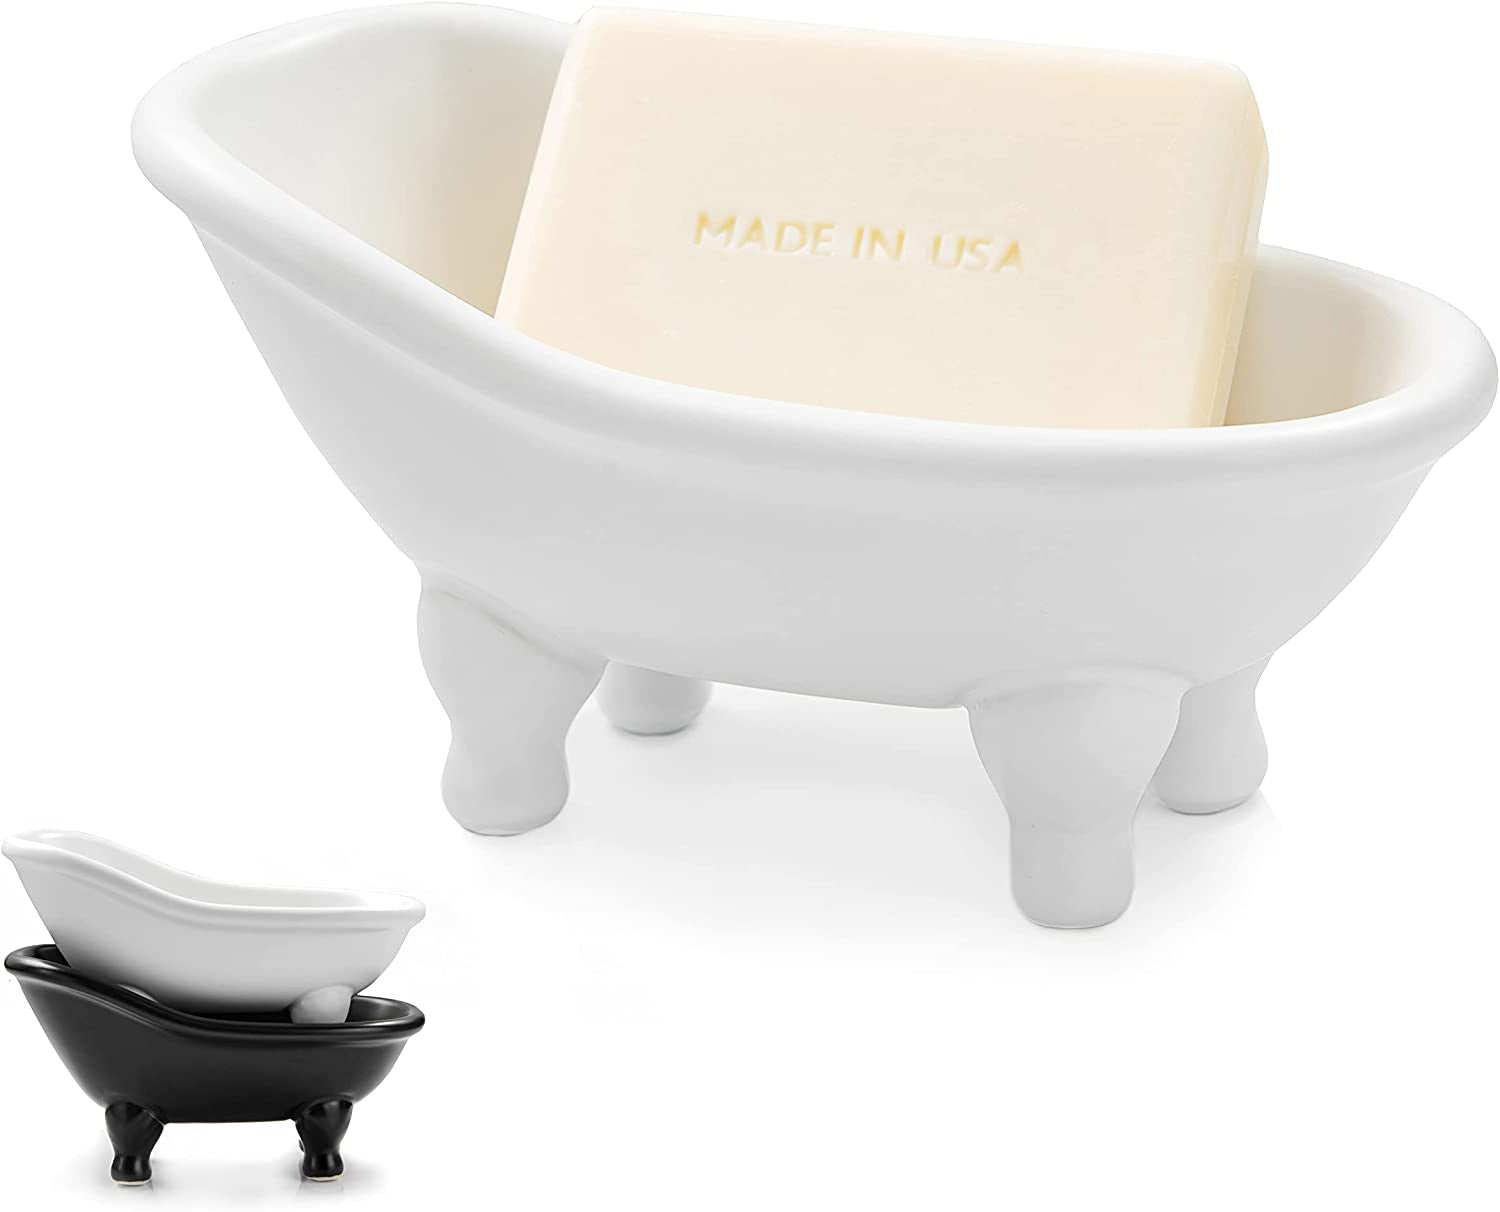 1Piece 5.6" White Ceramic Mini Bathtub Soap Dish (White)